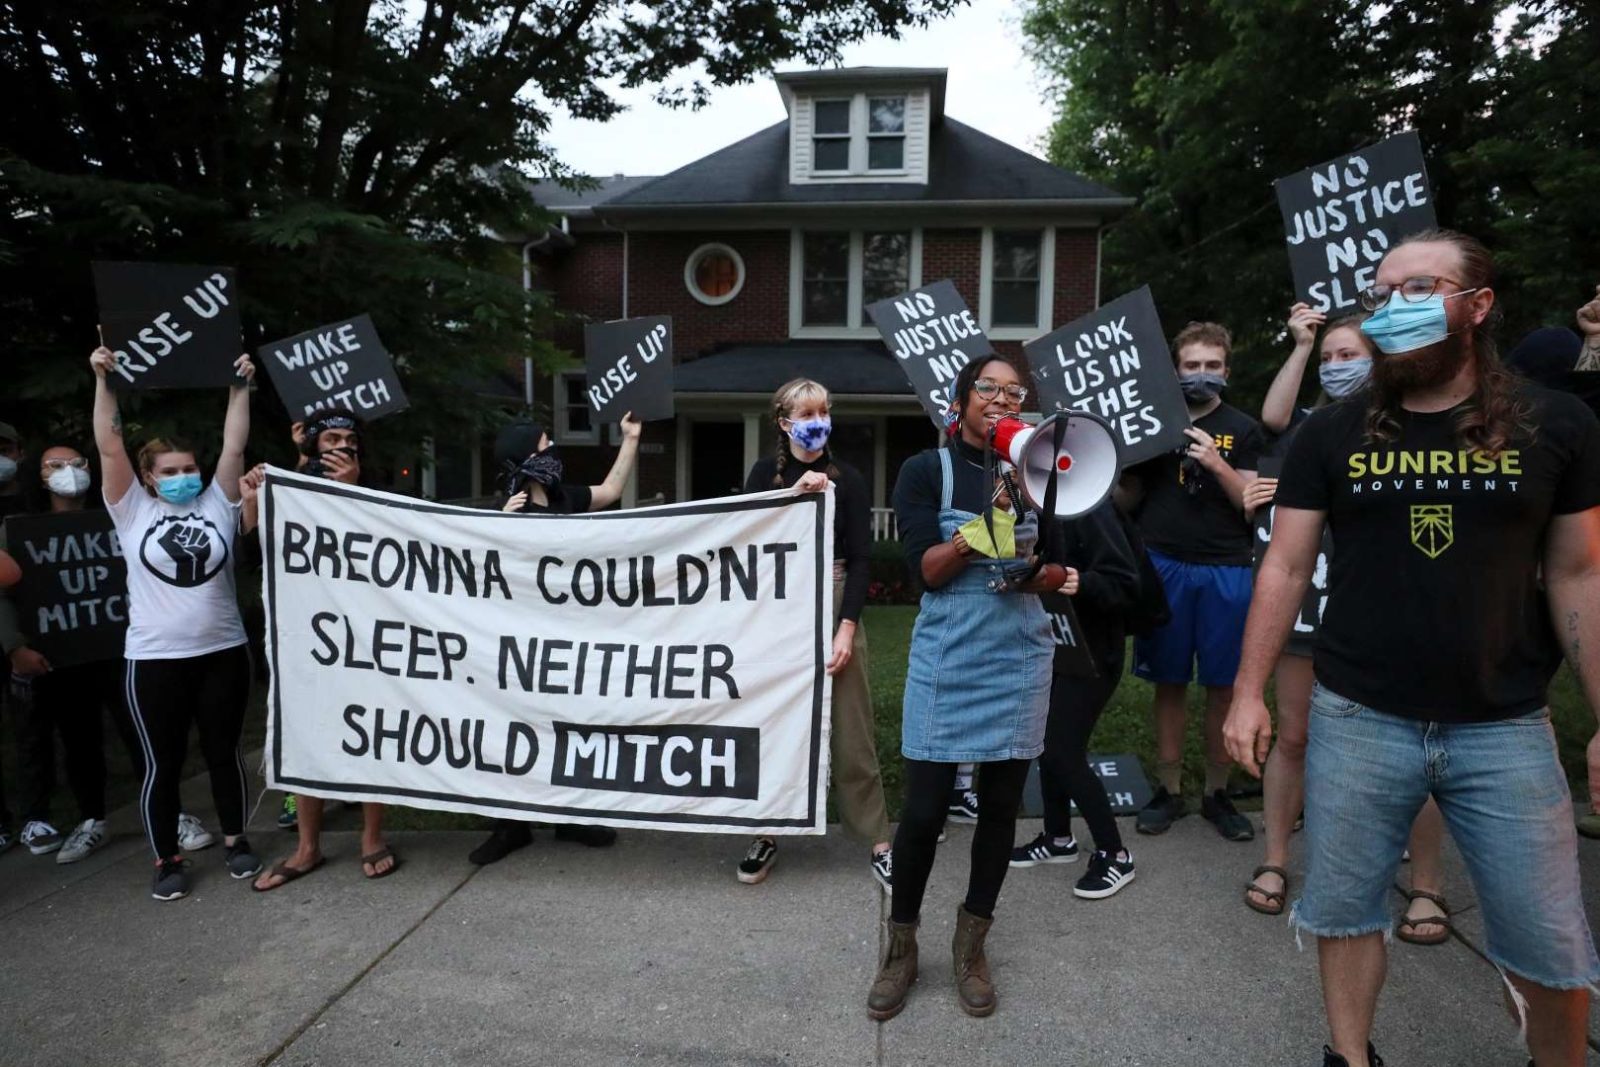 Um ativista do Sunrise fala em um megafone enquanto outros manifestantes estão em frente à casa KY de Mitch McConnell segurando uma grande placa dizendo "Breonna não conseguiu dormir. Nem deveria Mitch".